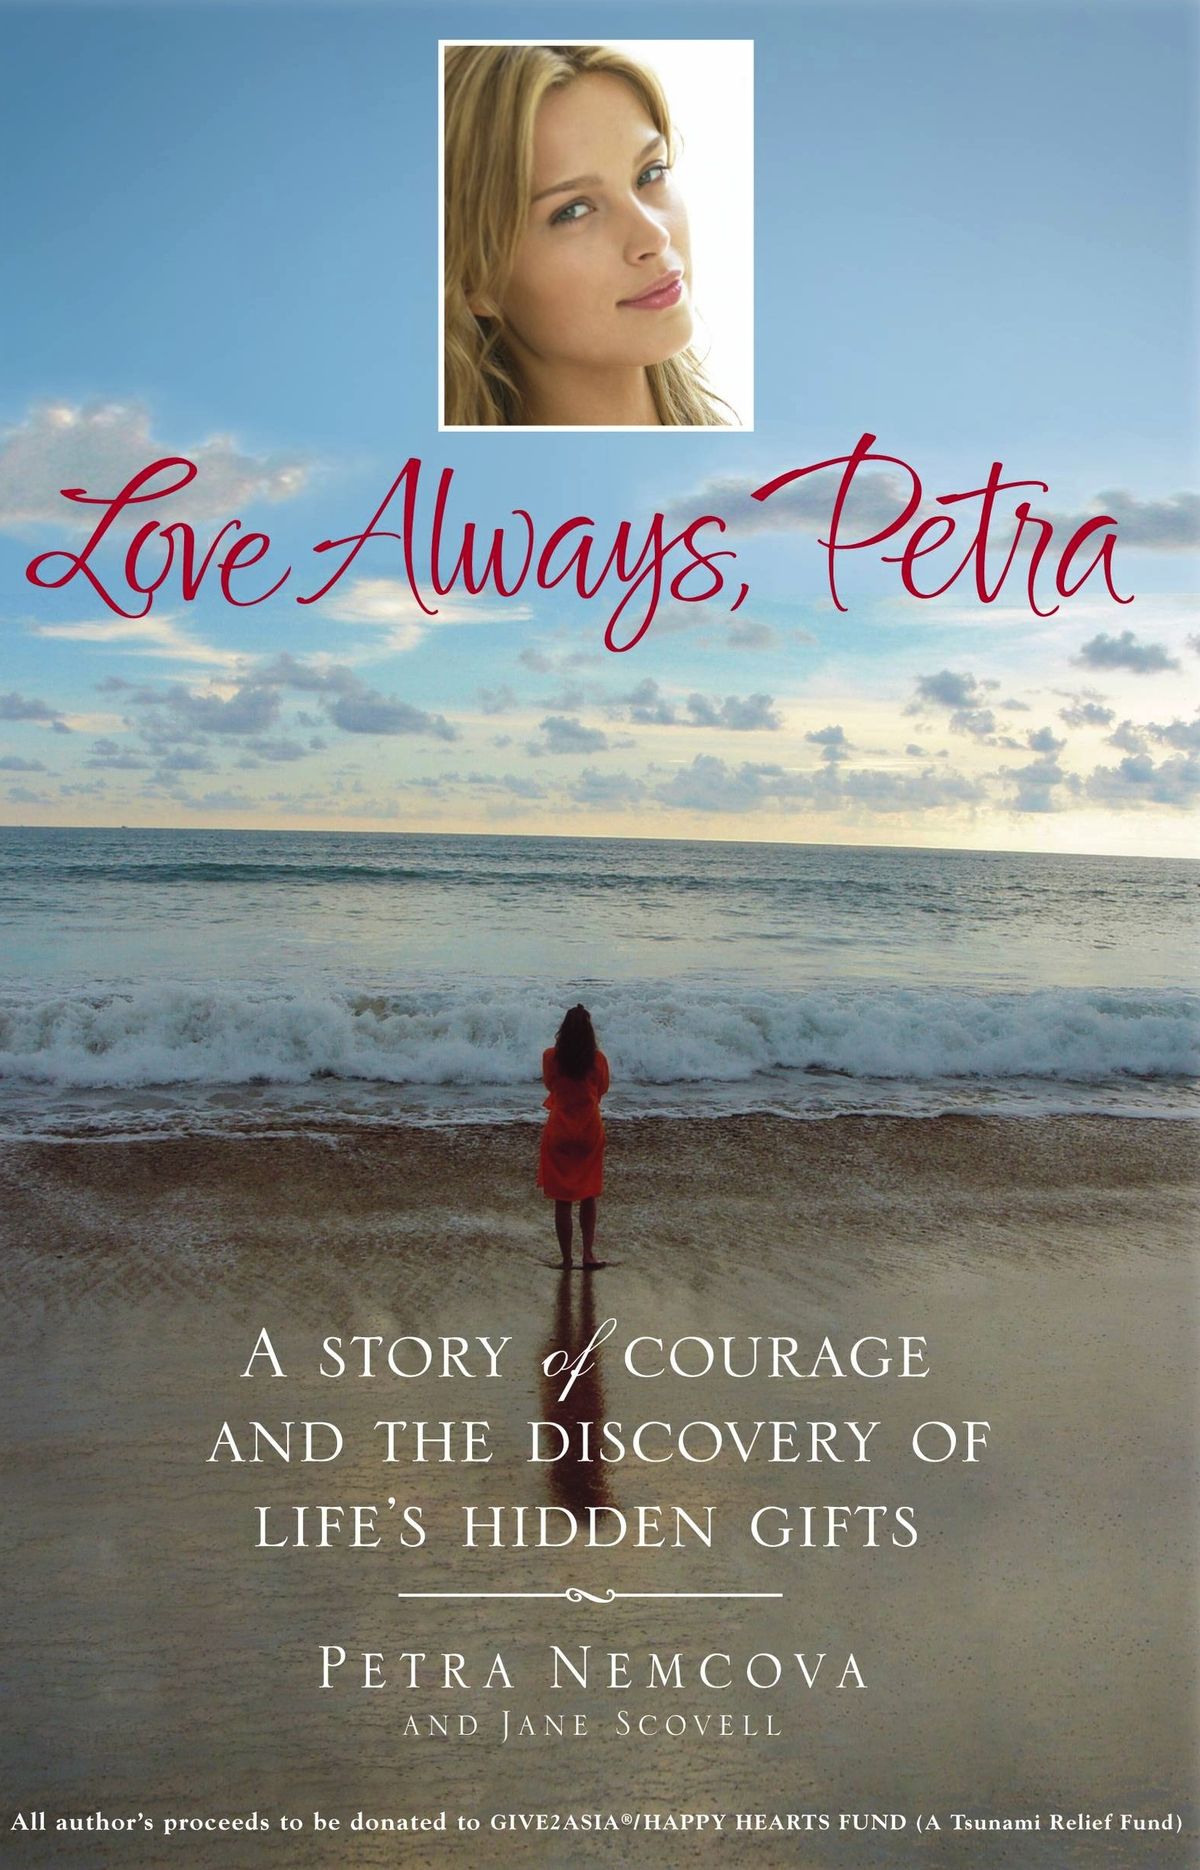 После трагических событий Петра издала книгу «Love Always. Petra»